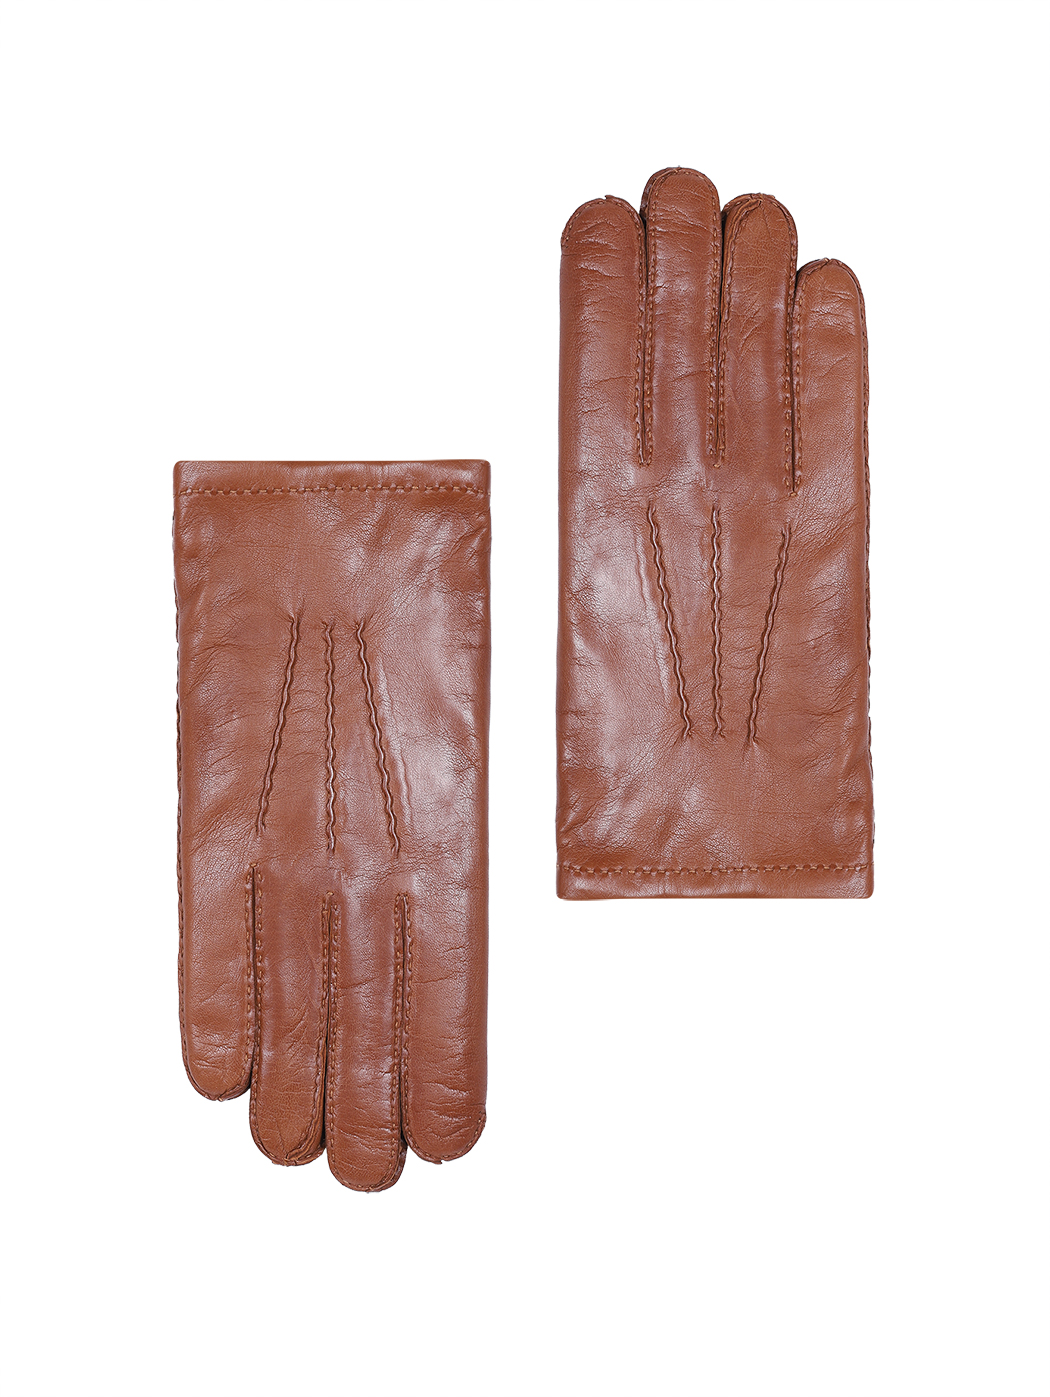 Мужские кожаные перчатки с кашемировым подкладом коричневого цвета